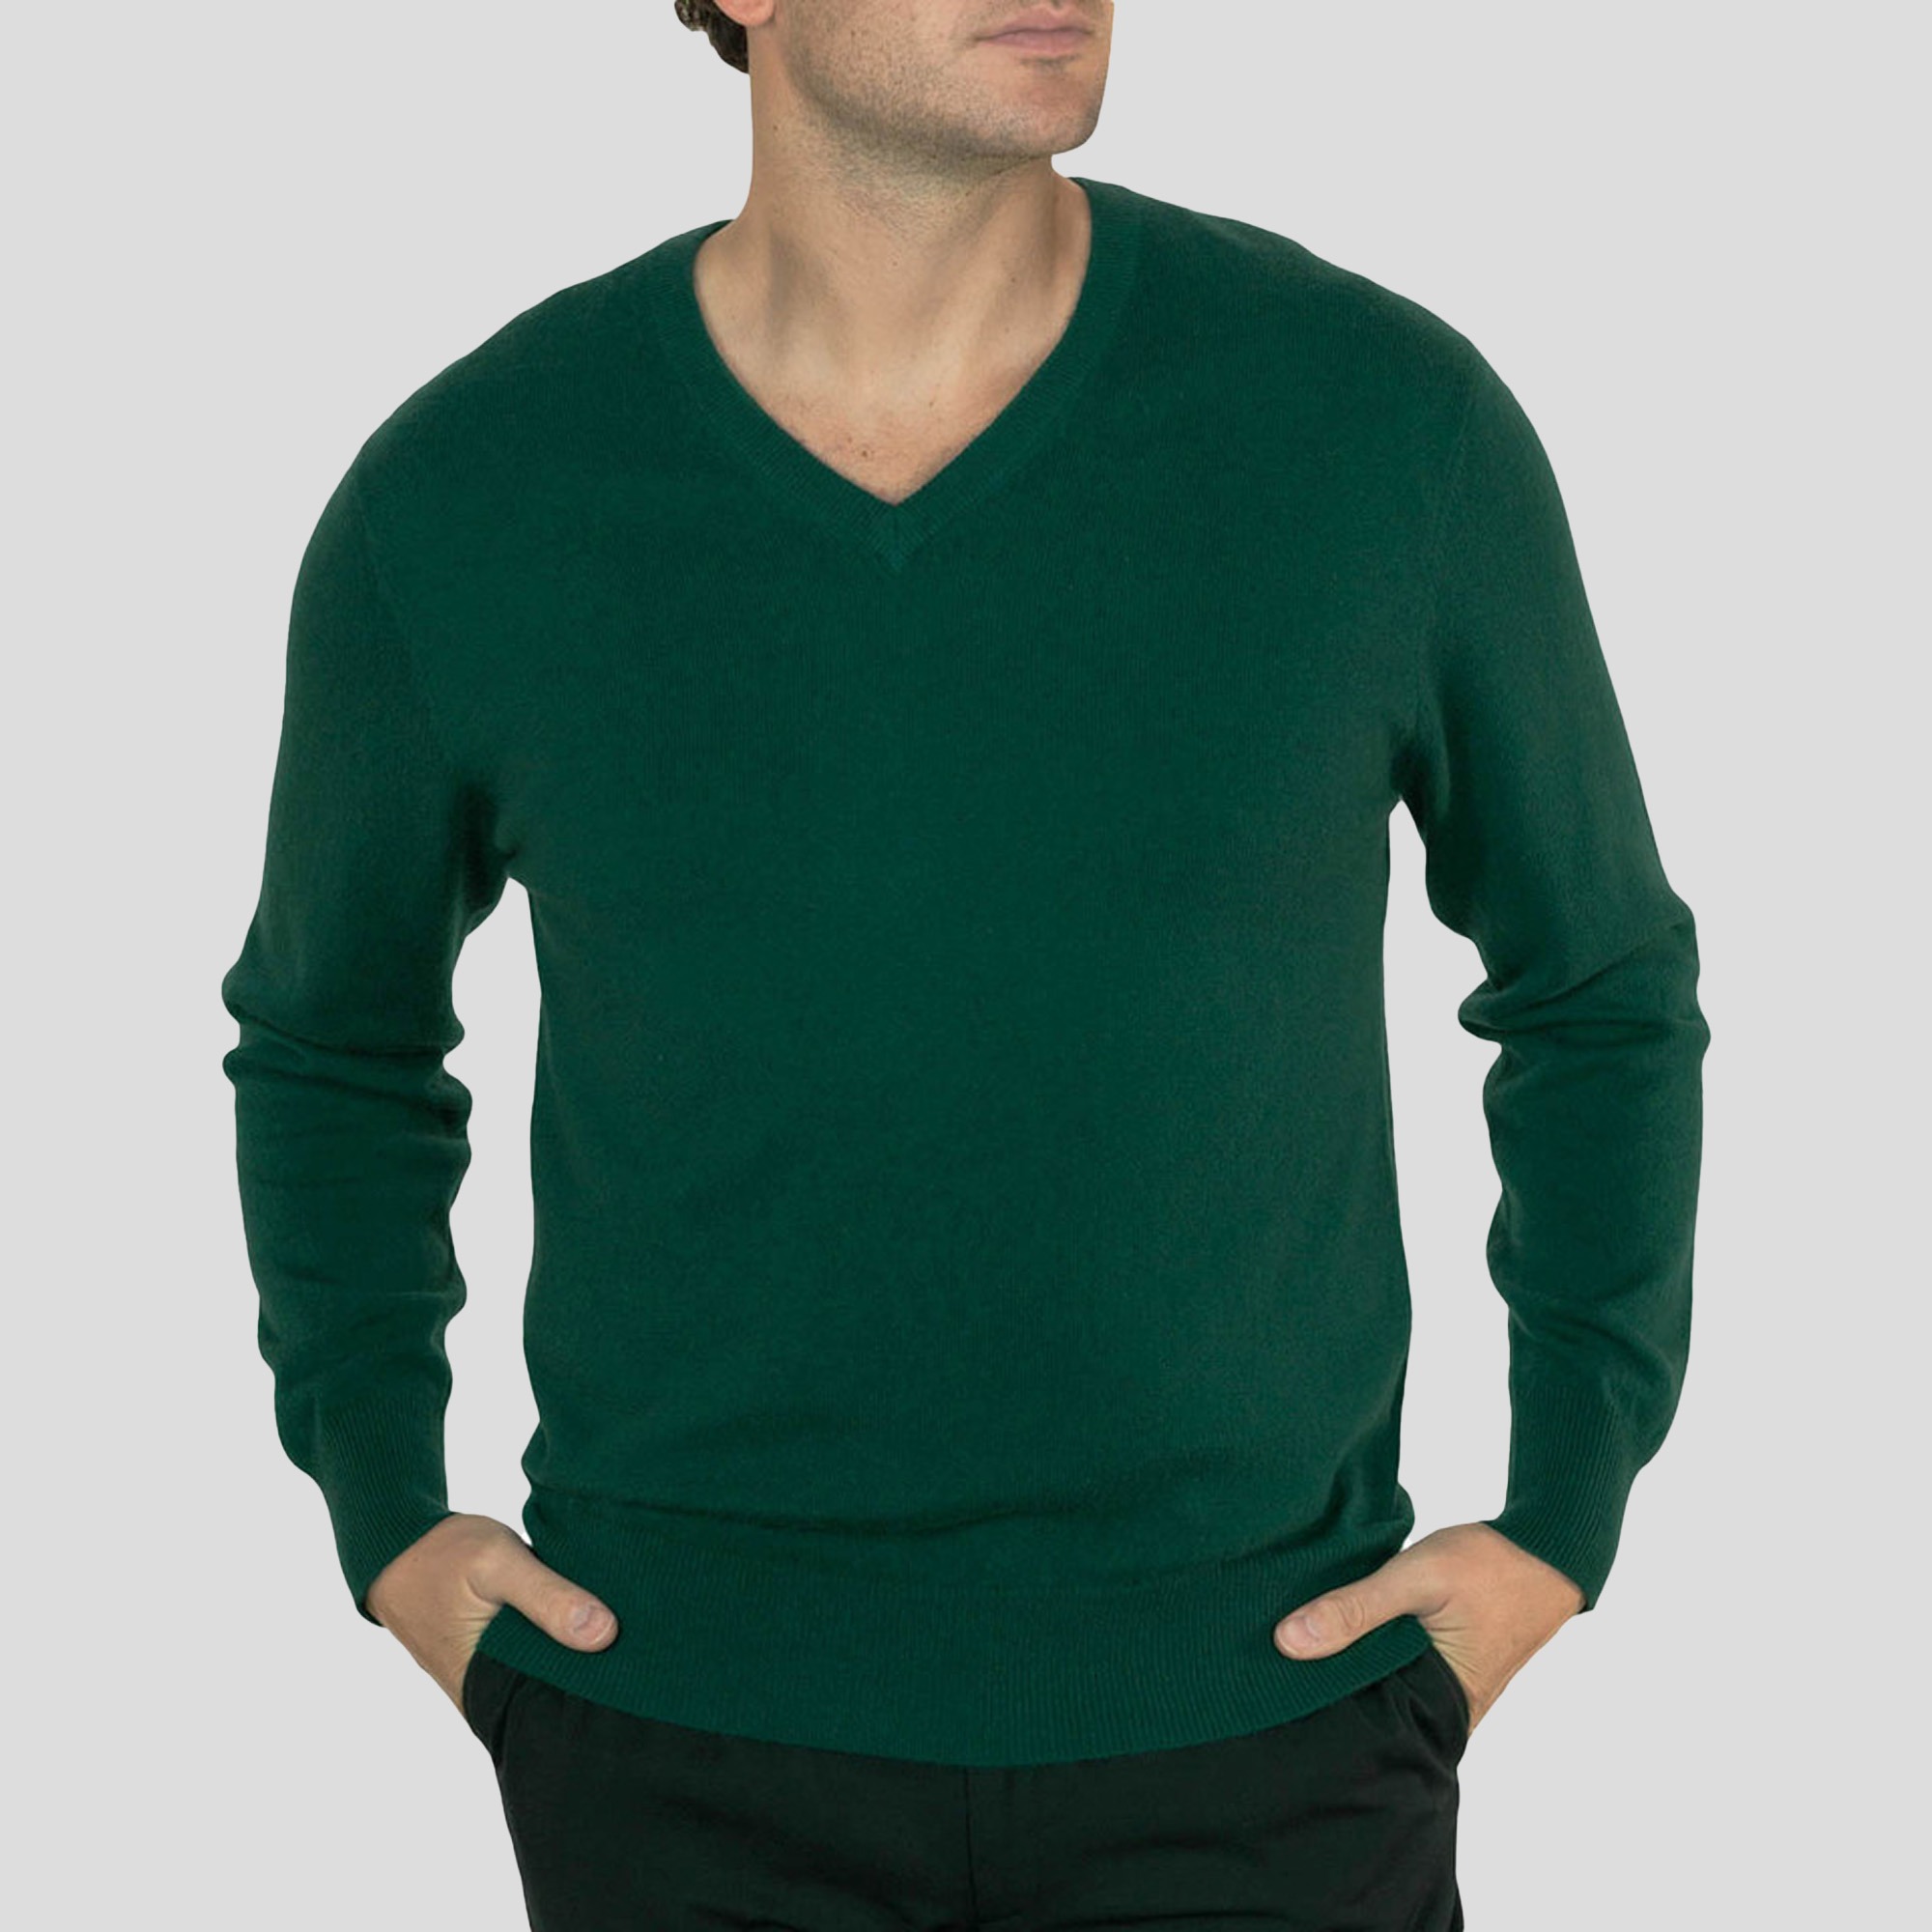 Grey- Lona Scott Mens V neck jumper, green